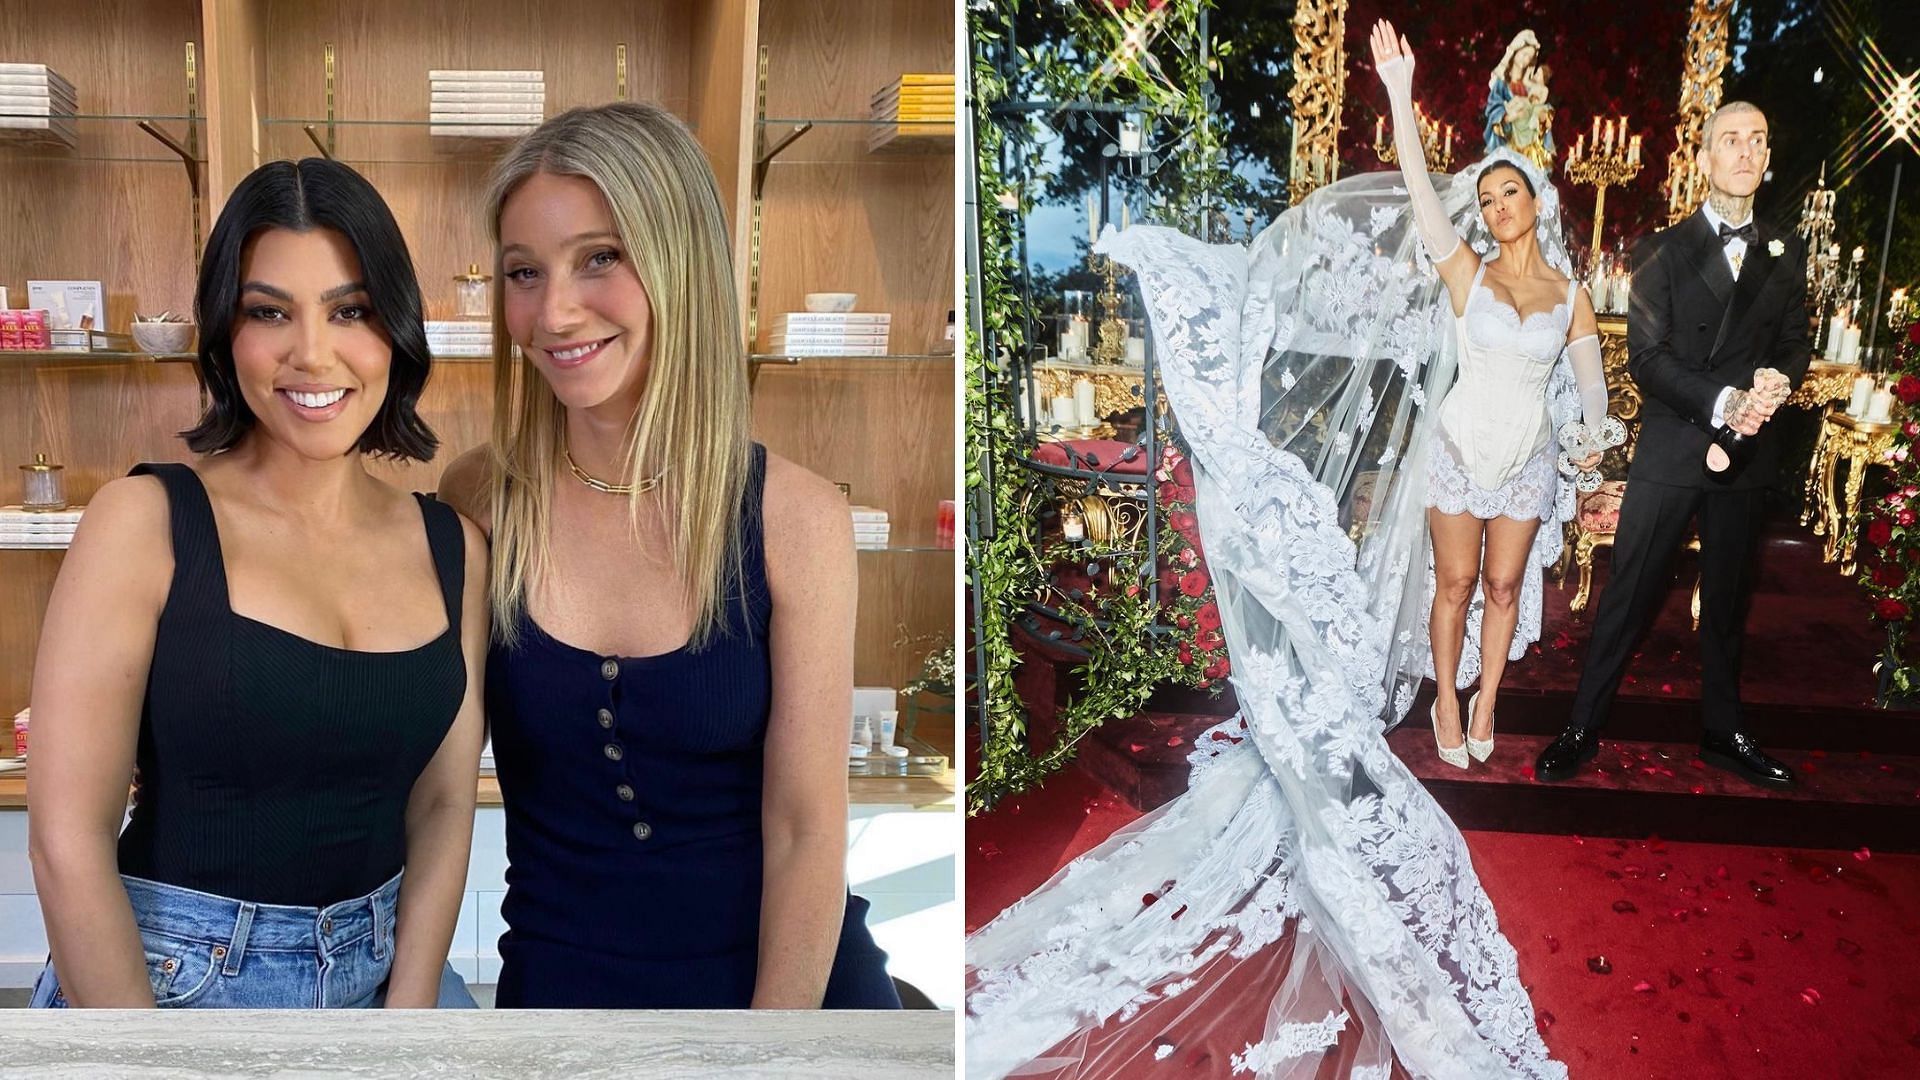 Gwyneth Paltrow advised Kourtney Kardashian on a successful marriage on The Kardashians (Image via @pooshdotcom/Twitter,kourtneykardash/Instagram)